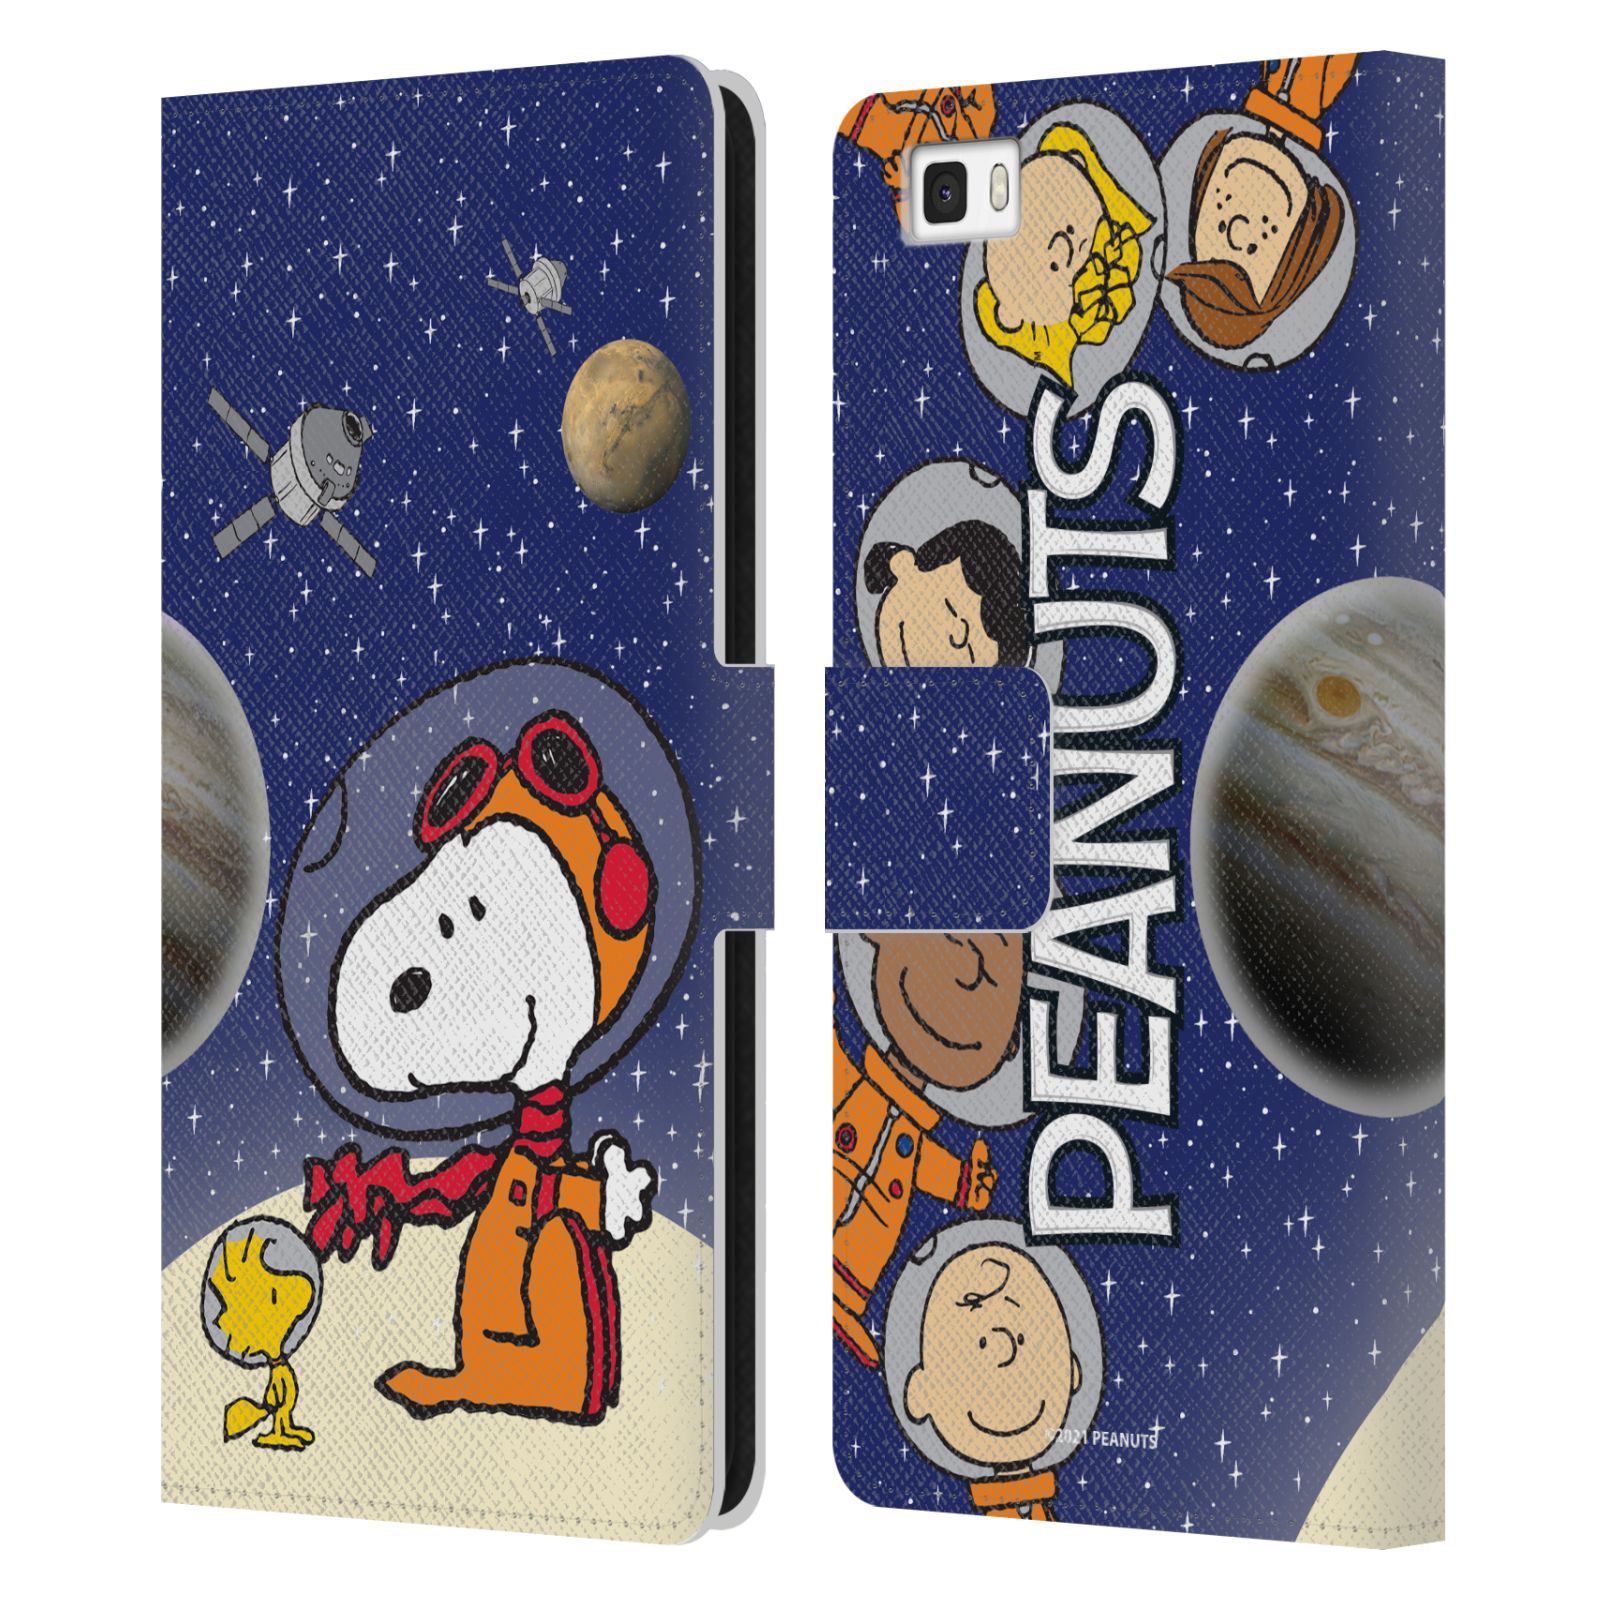 Pouzdro na mobil Huawei P8 LITE - HEAD CASE - Peanuts Snoopy ve vesmíru 2